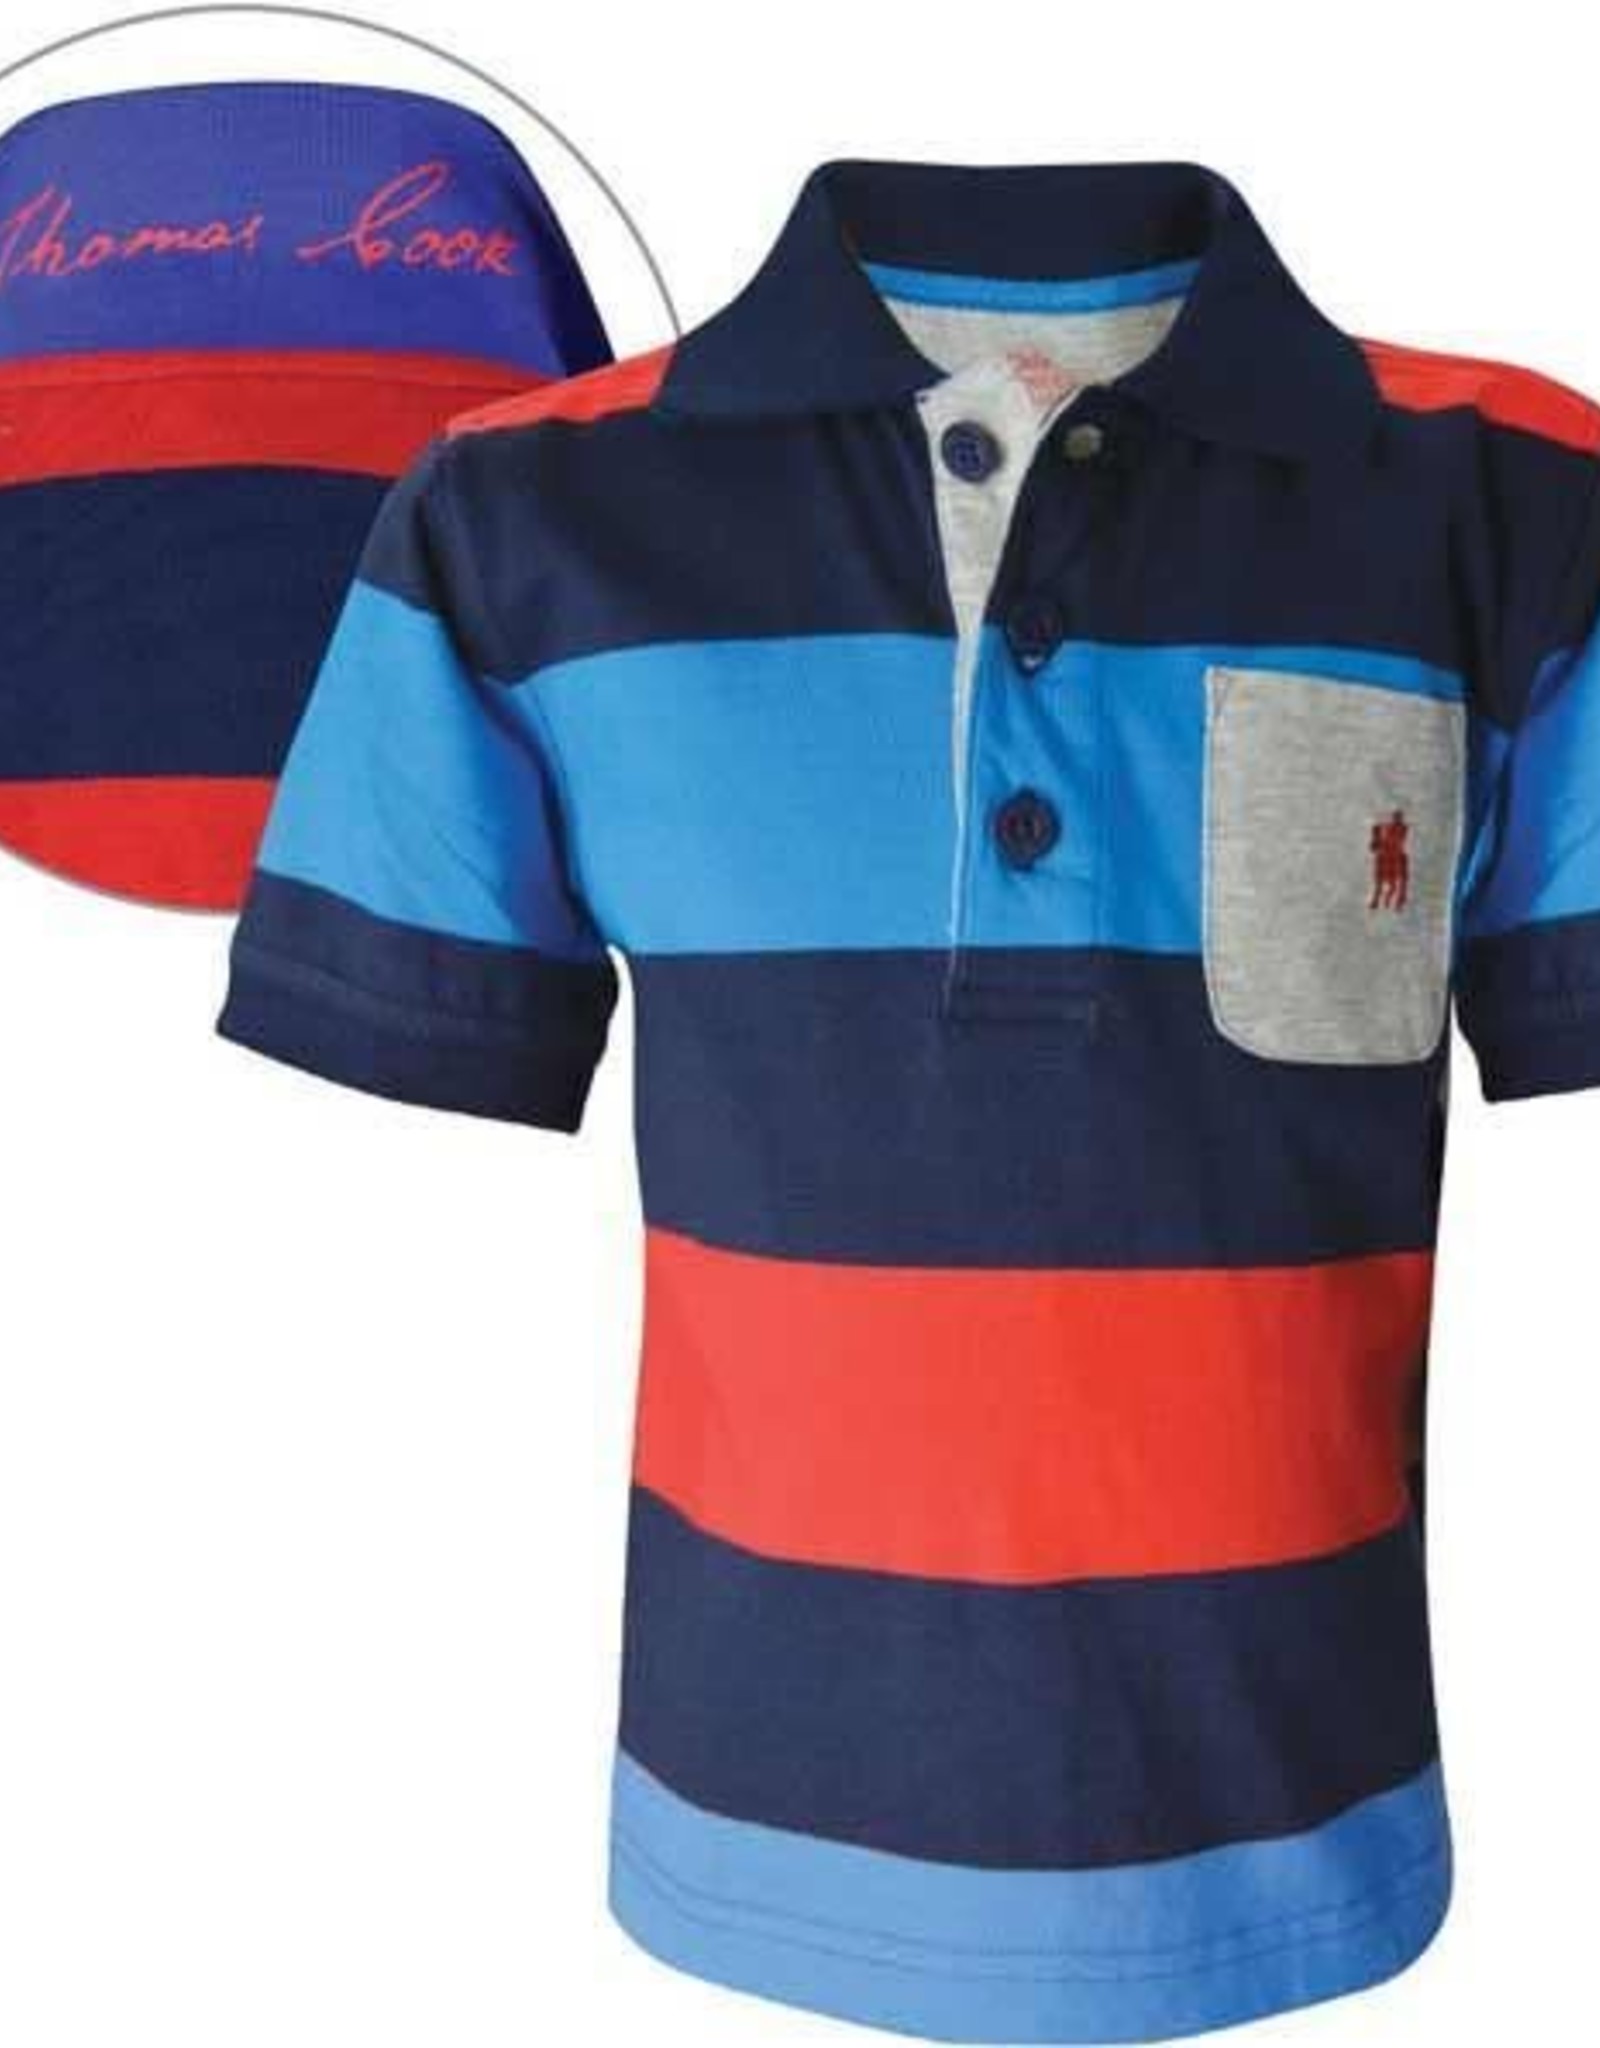 Thomas Cook Thomas Cook Boys Katoomba Stripe Shirt Multi